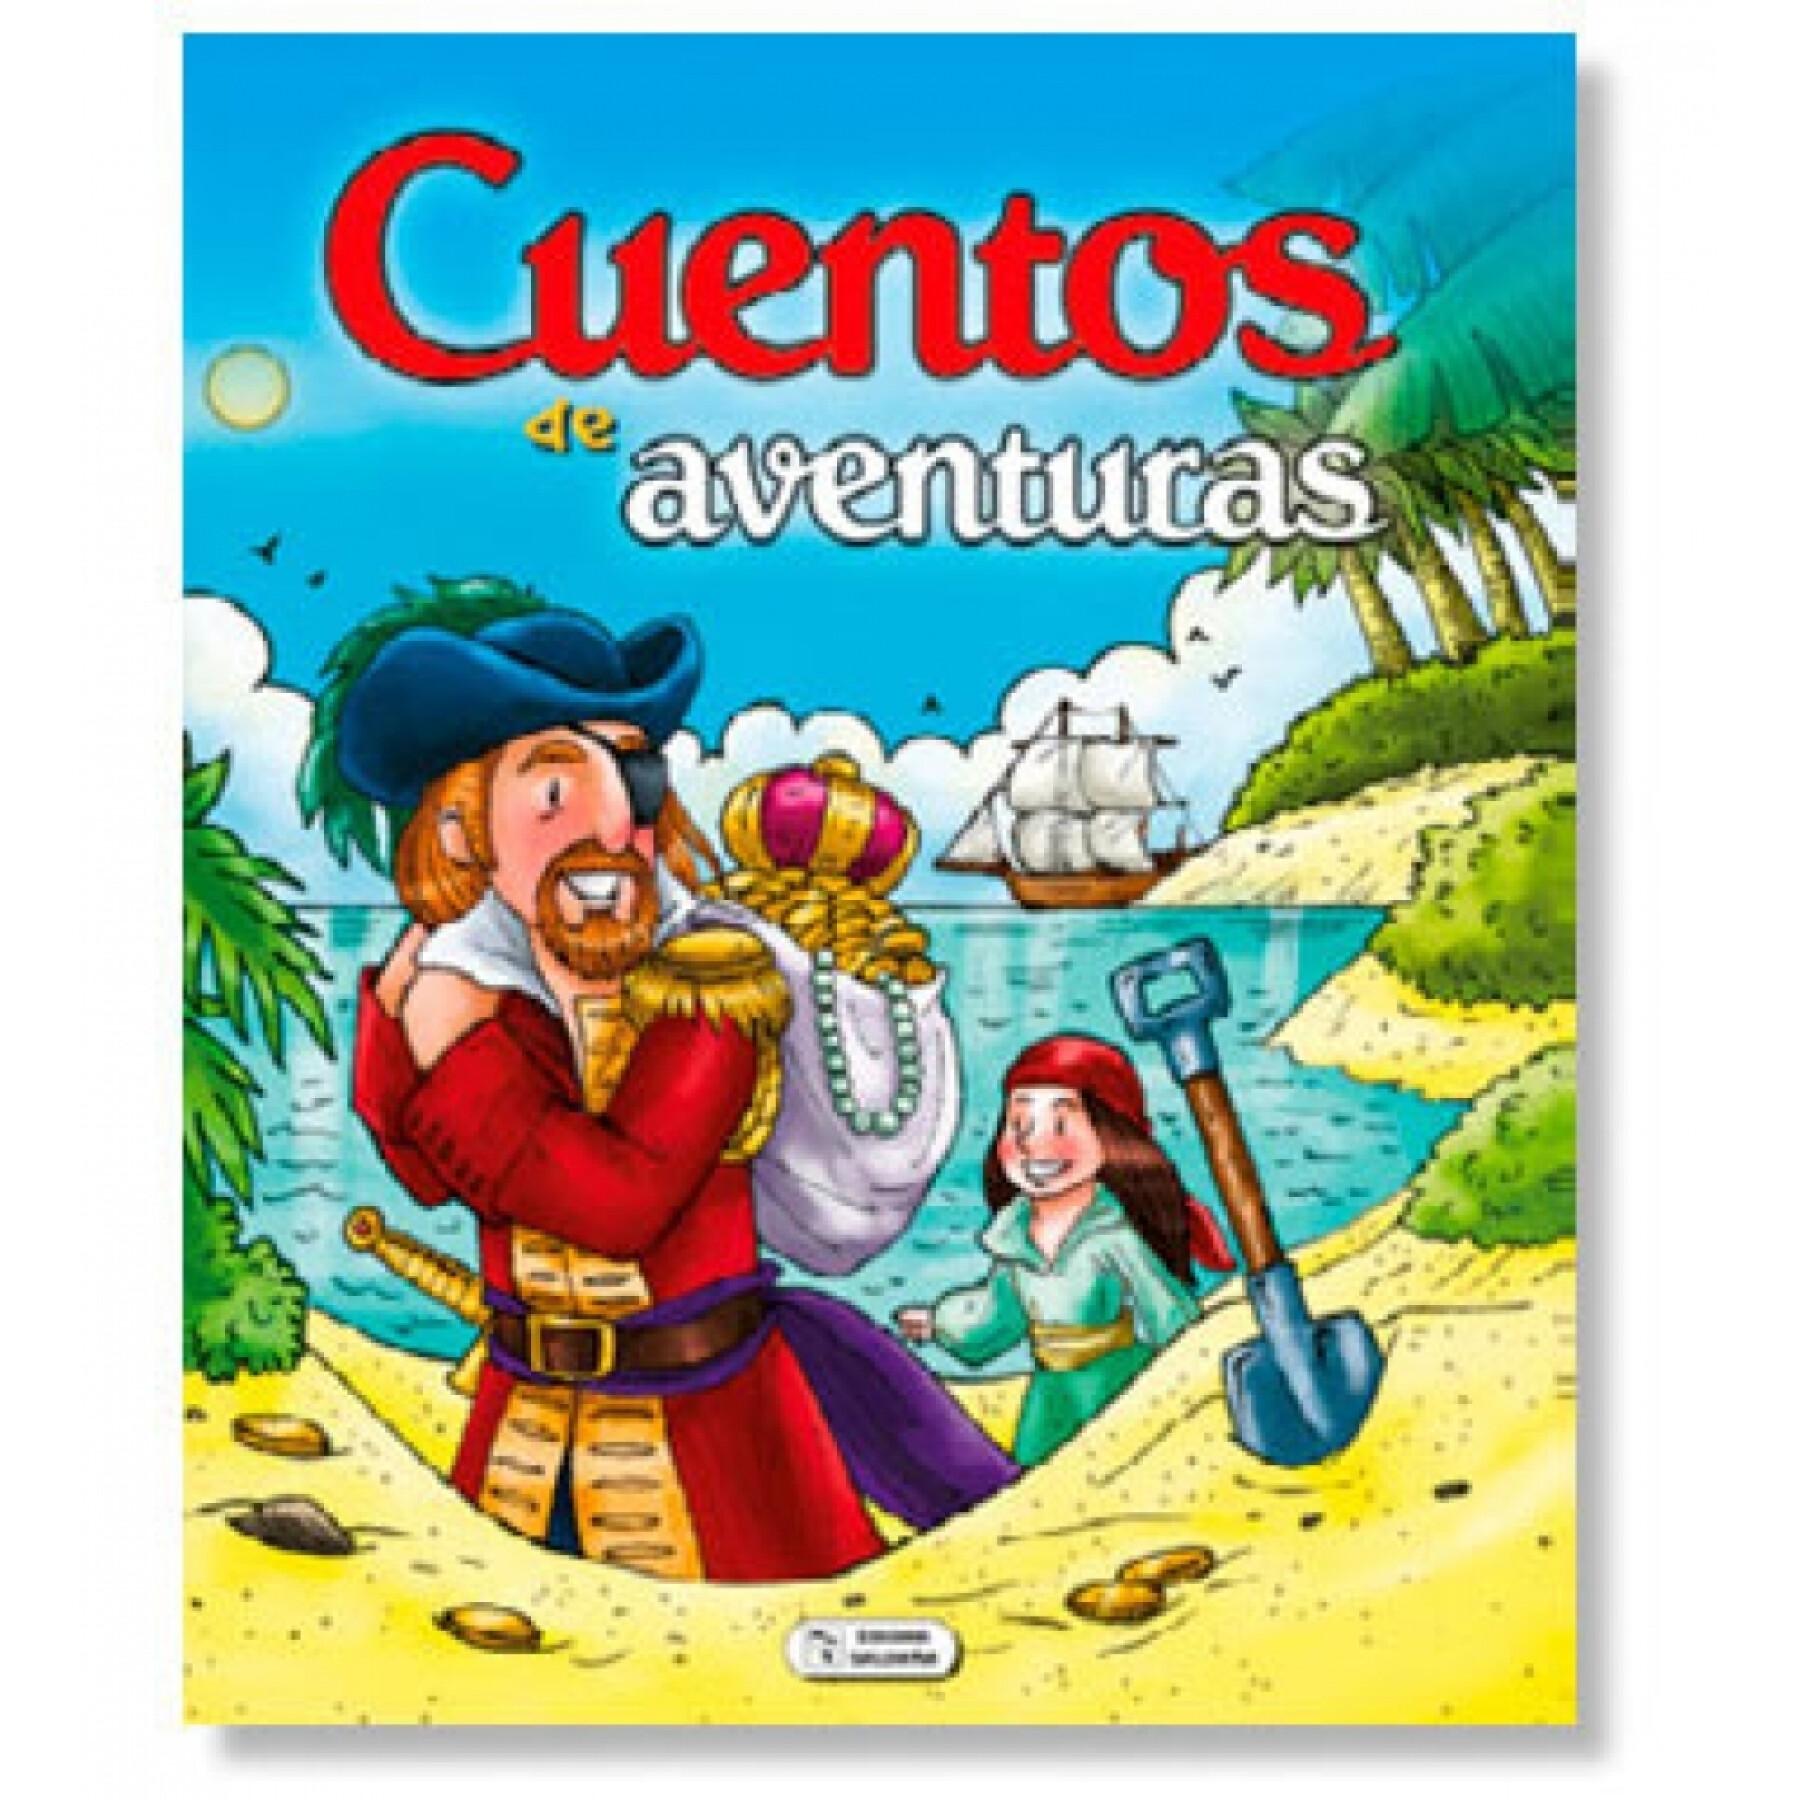 Storybook 280 pagina's avonturen Ediciones Saldaña